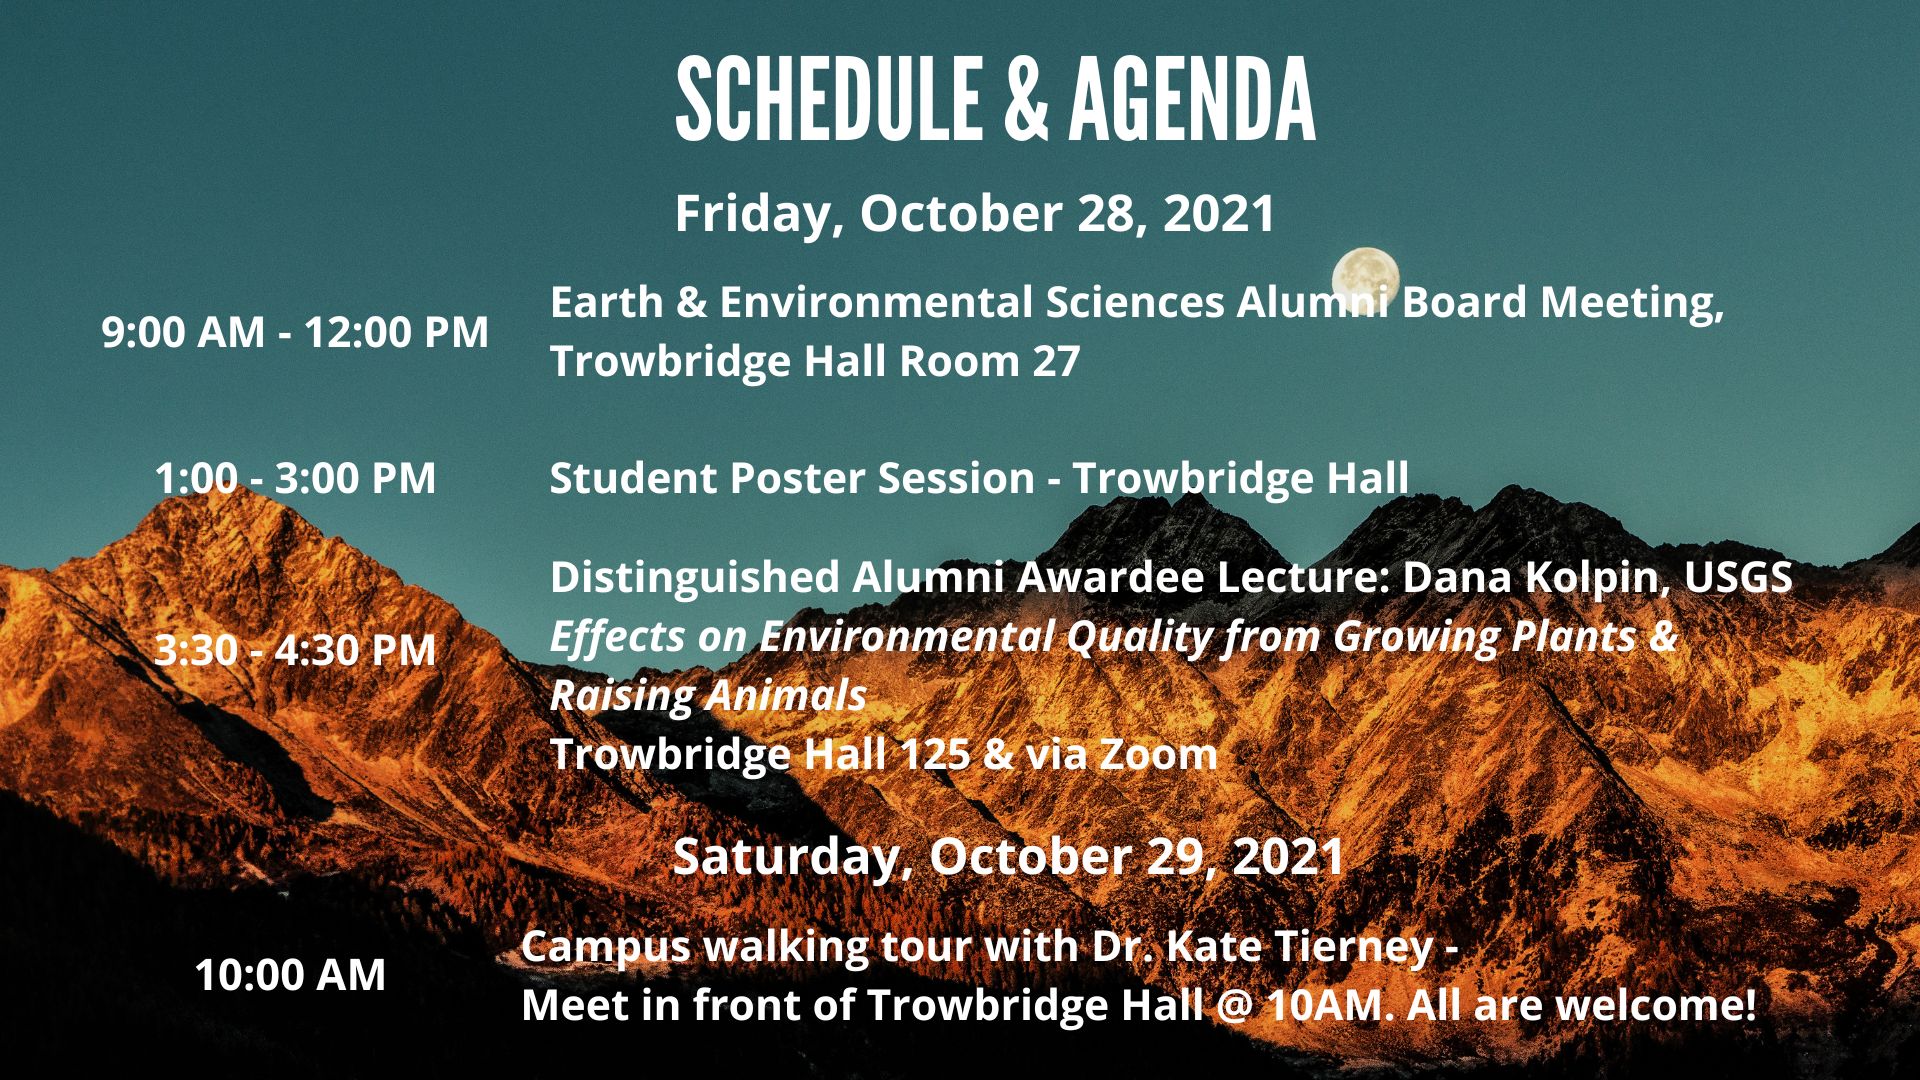 Landscape Alumni Event Announcement - Schedule